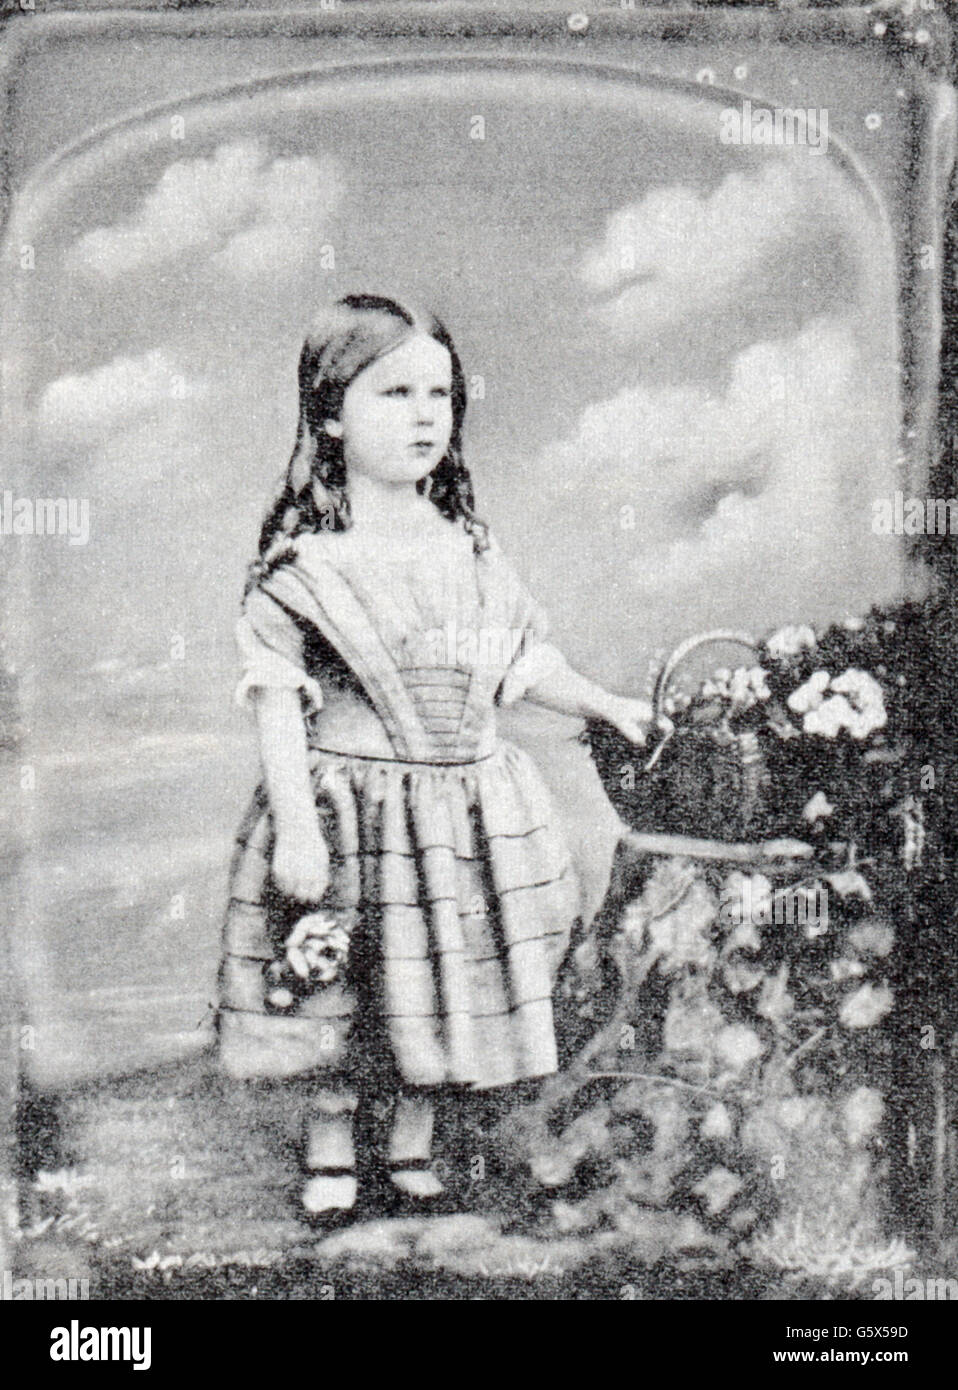 Photographie, daguerréotype, petite fille, par William Edward Kilburn (1818 - 1891), 1856, droits additionnels-Clearences-non disponible Banque D'Images